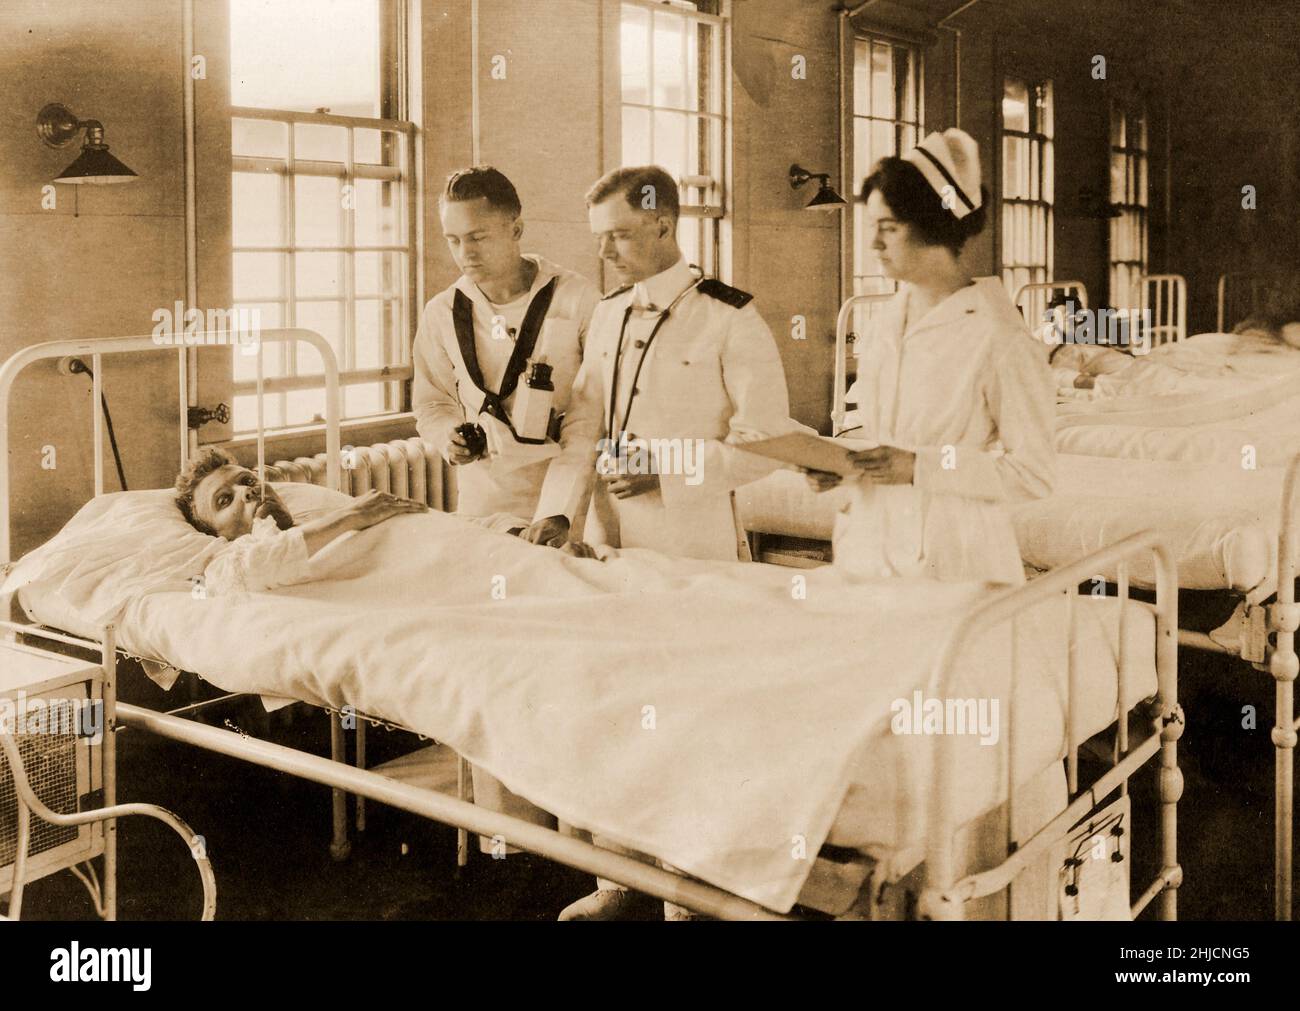 Ein Patient in einer Abteilung des US Naval Hospital, Chelsea, Massachusetts. Ein Chirurg, eine Krankenschwester und ein Korpsmann untersuchen einen Patienten in der Abteilung 6, Gruppe 1, 2. Juni 1919. Marine History and Heritage Command Foto. Stockfoto